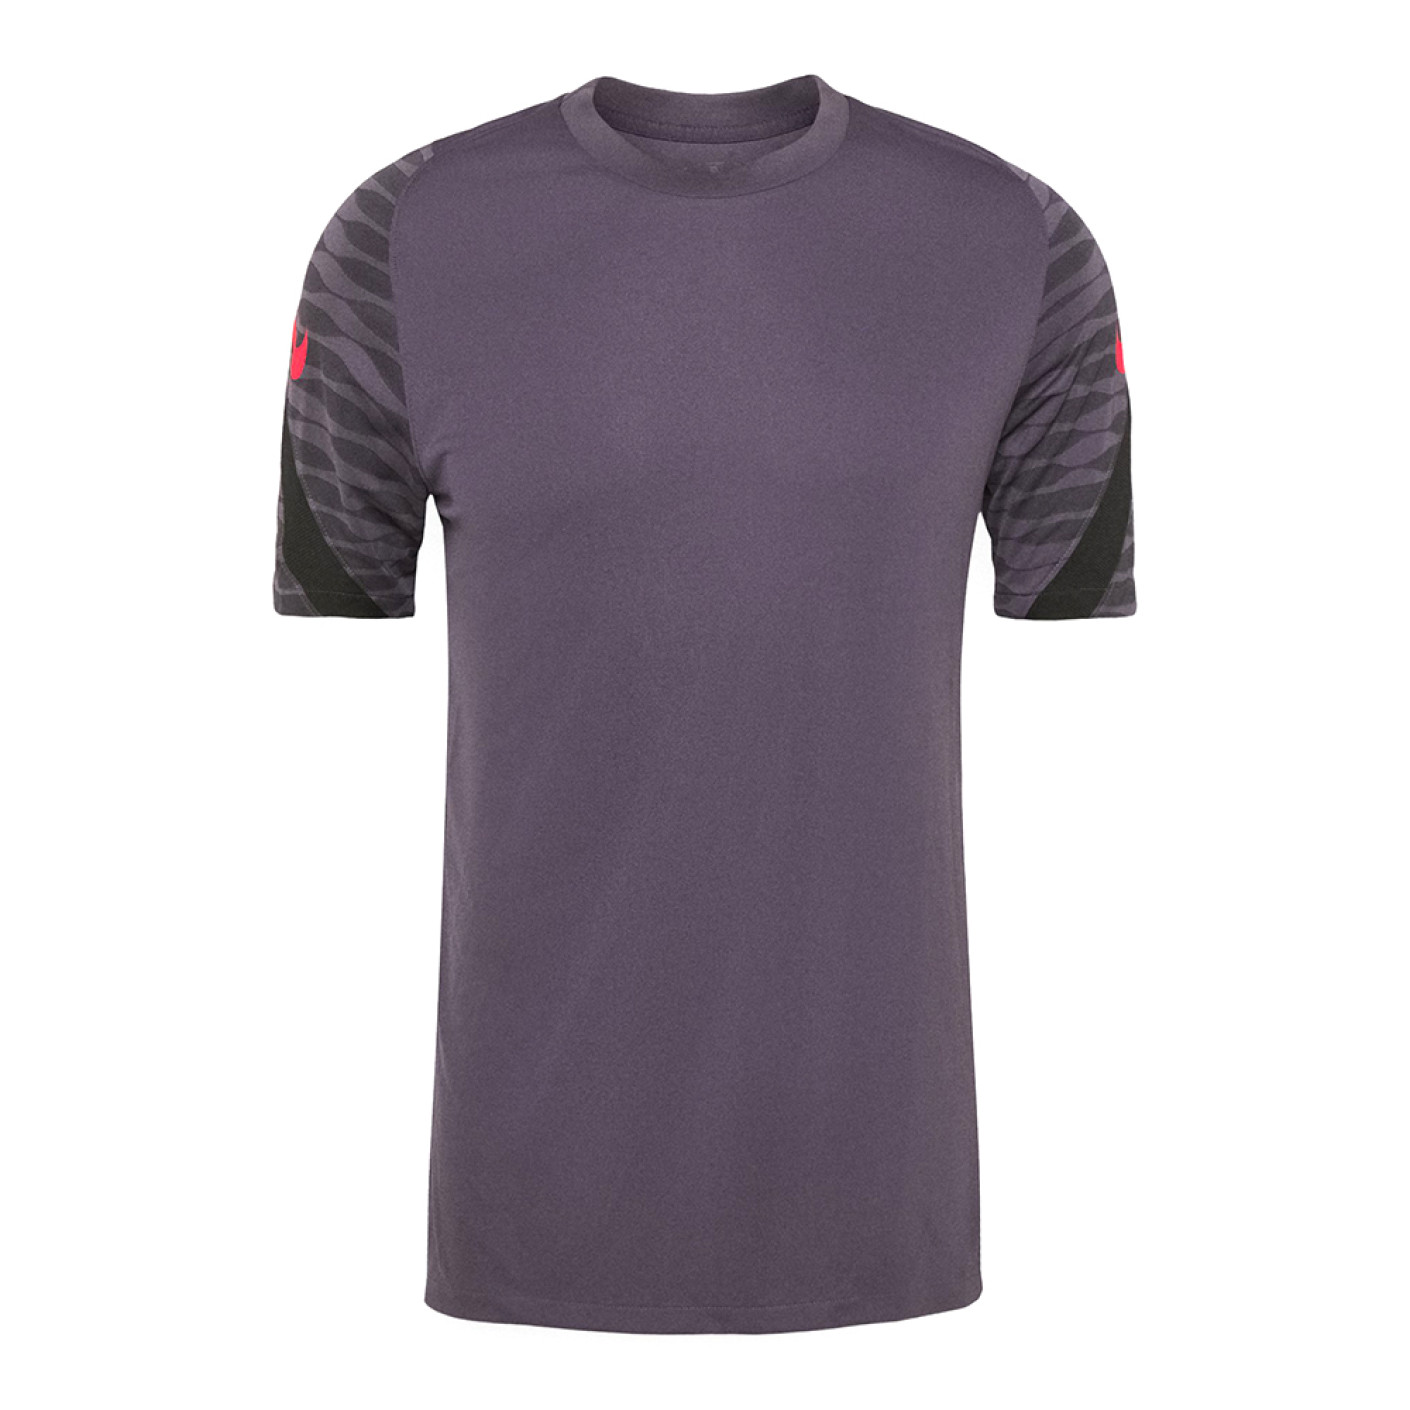 Nike Dri-FIT Strike Training Shirt Purple Black Bright Red